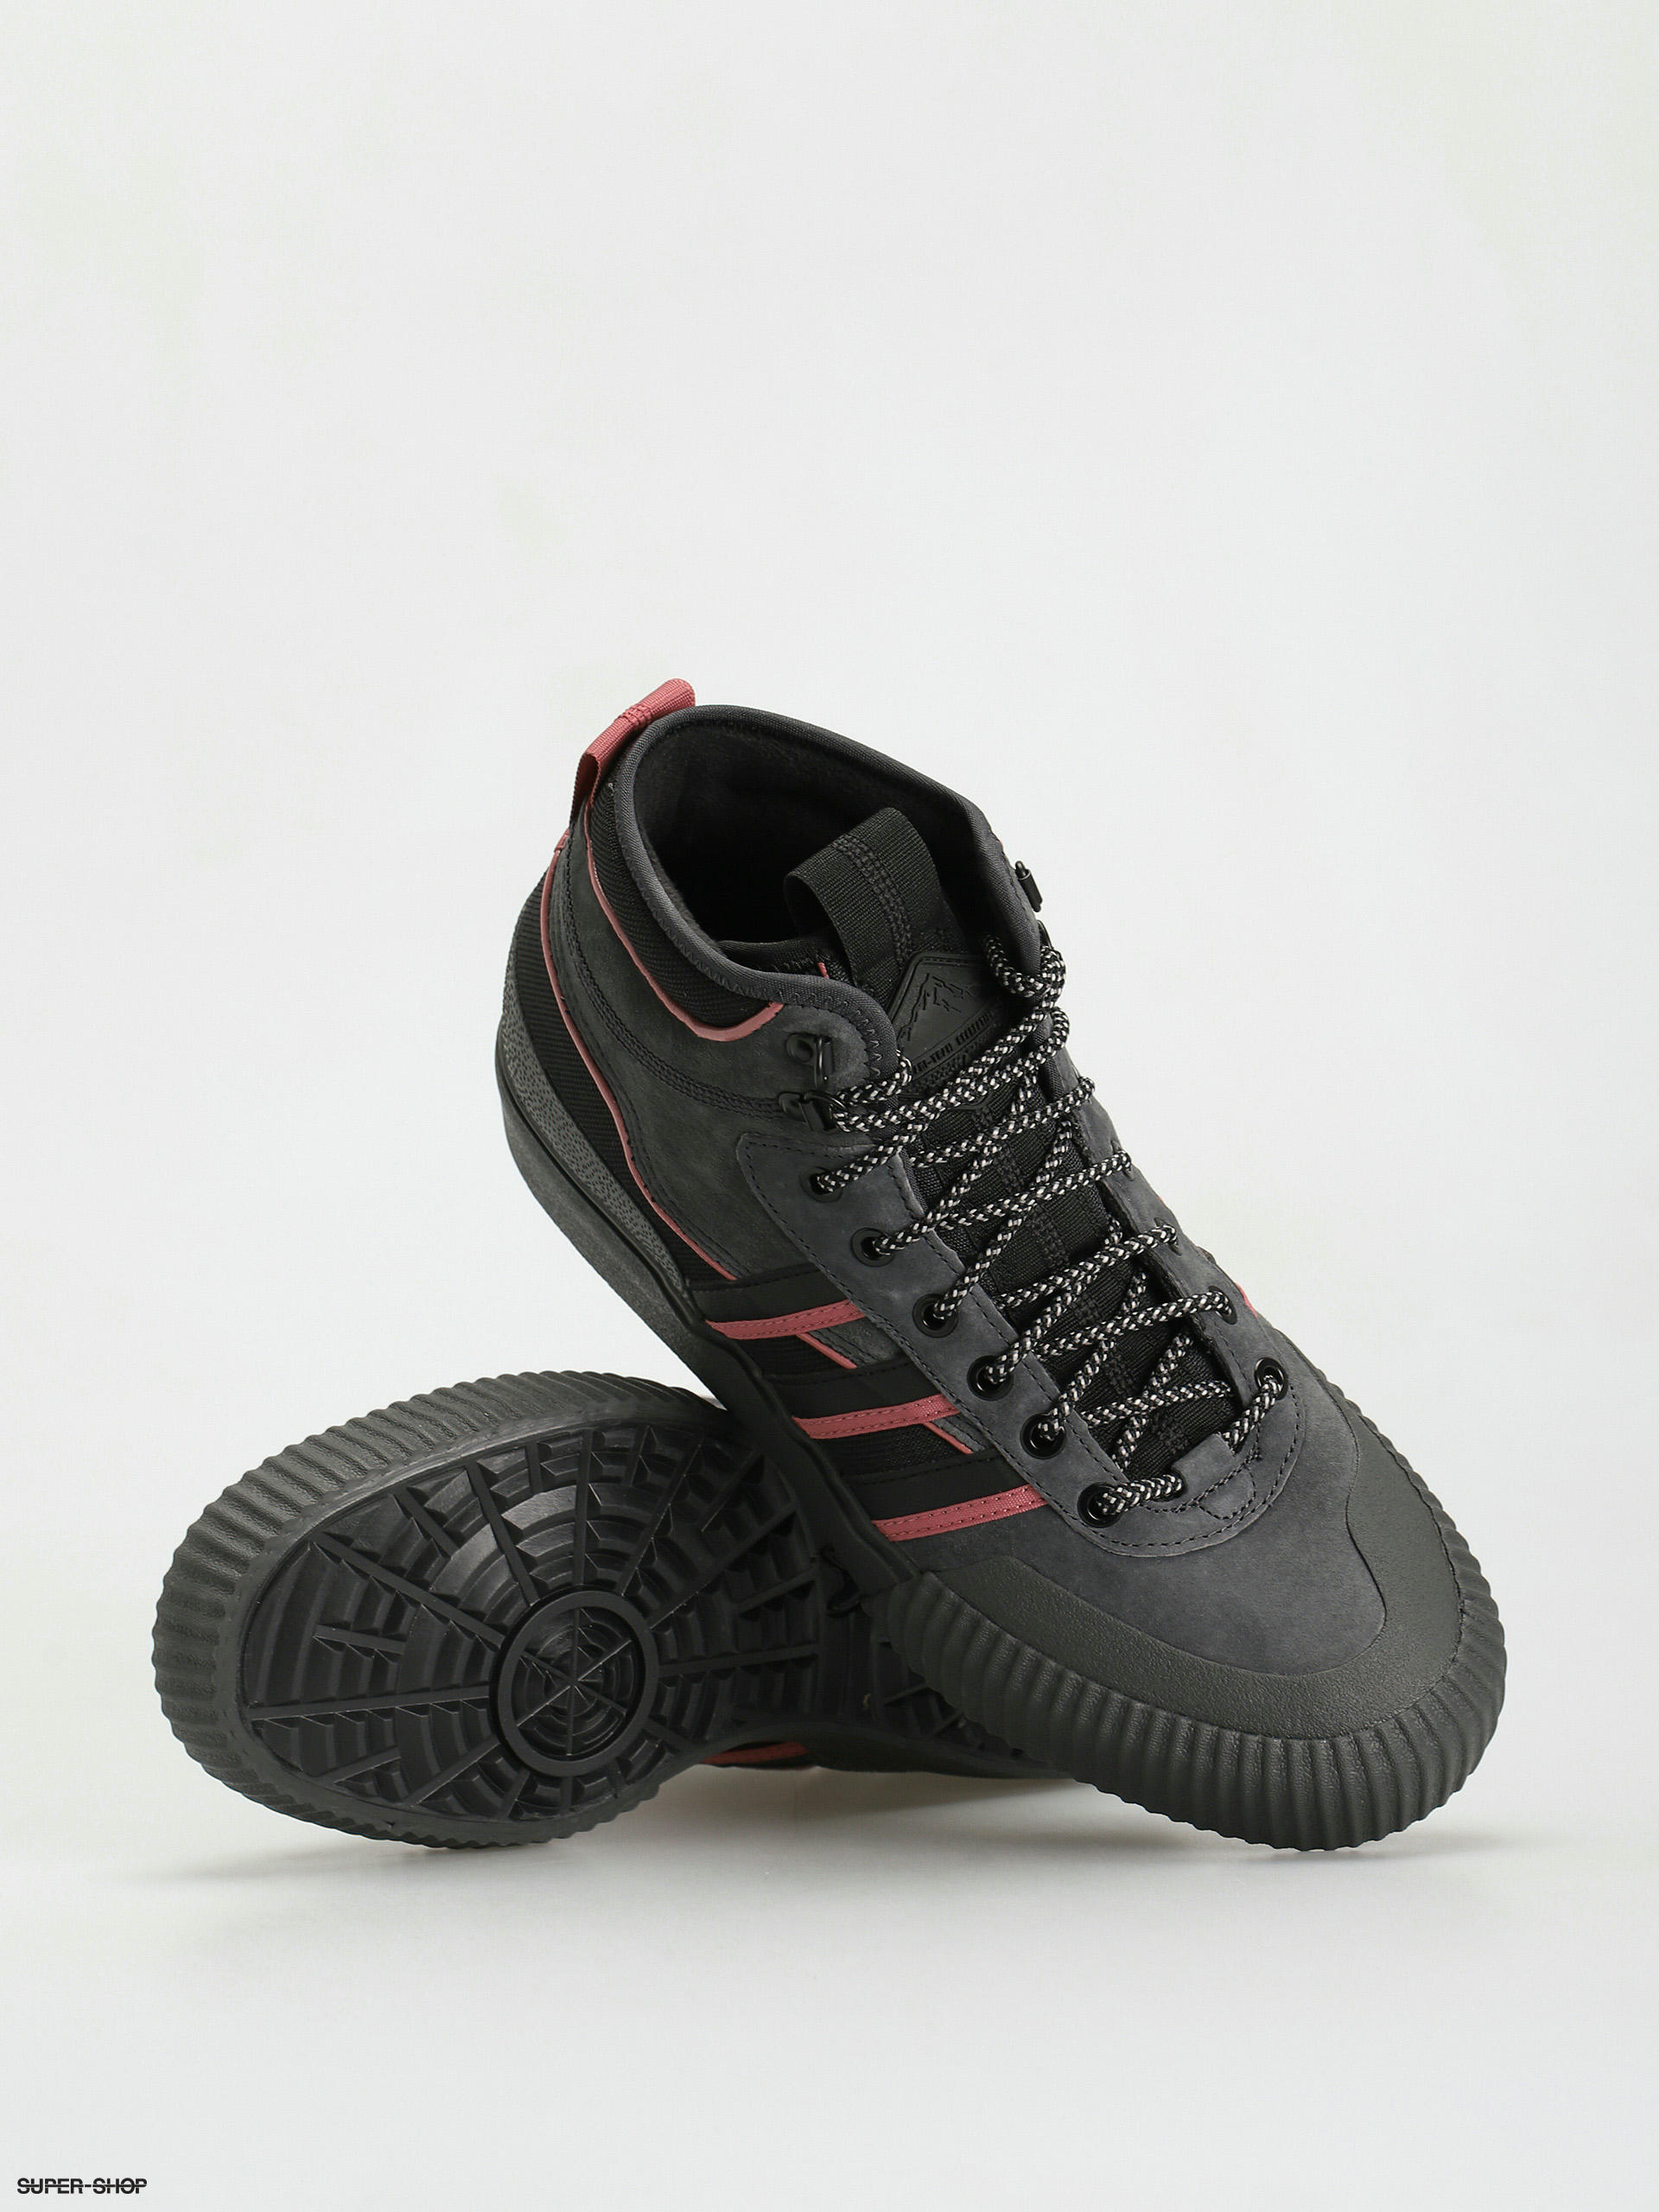 Akando Atr Shoes adidas (cblack/wonred/carbon) Originals